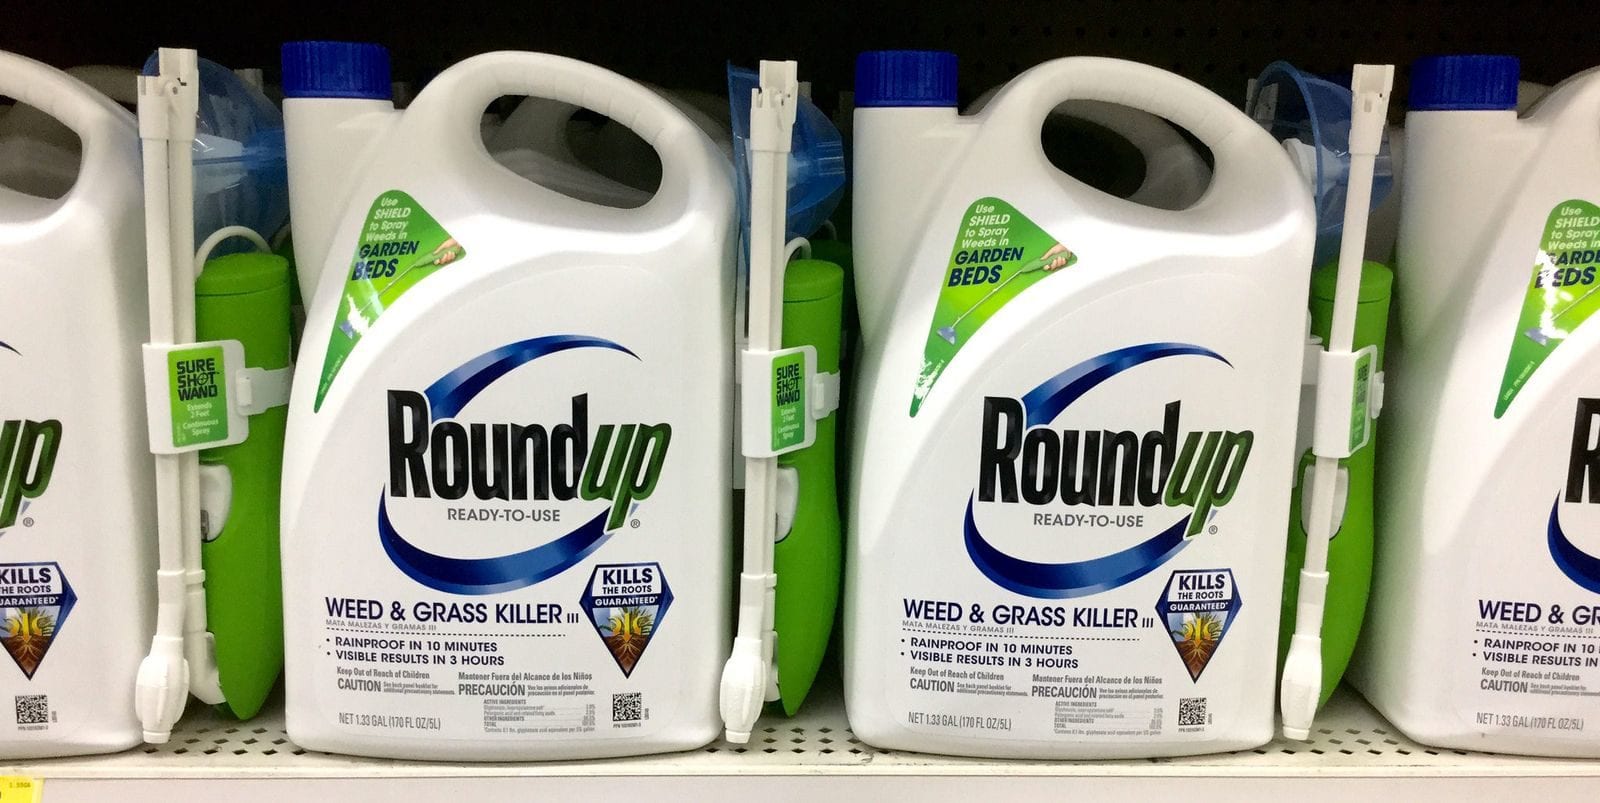 Le round-up, pesticide de Monsanto, est composé de glyphosate, molécule cancerogène mais il est encore autorisé (Photo Mike Mozart / FlickR / cc)